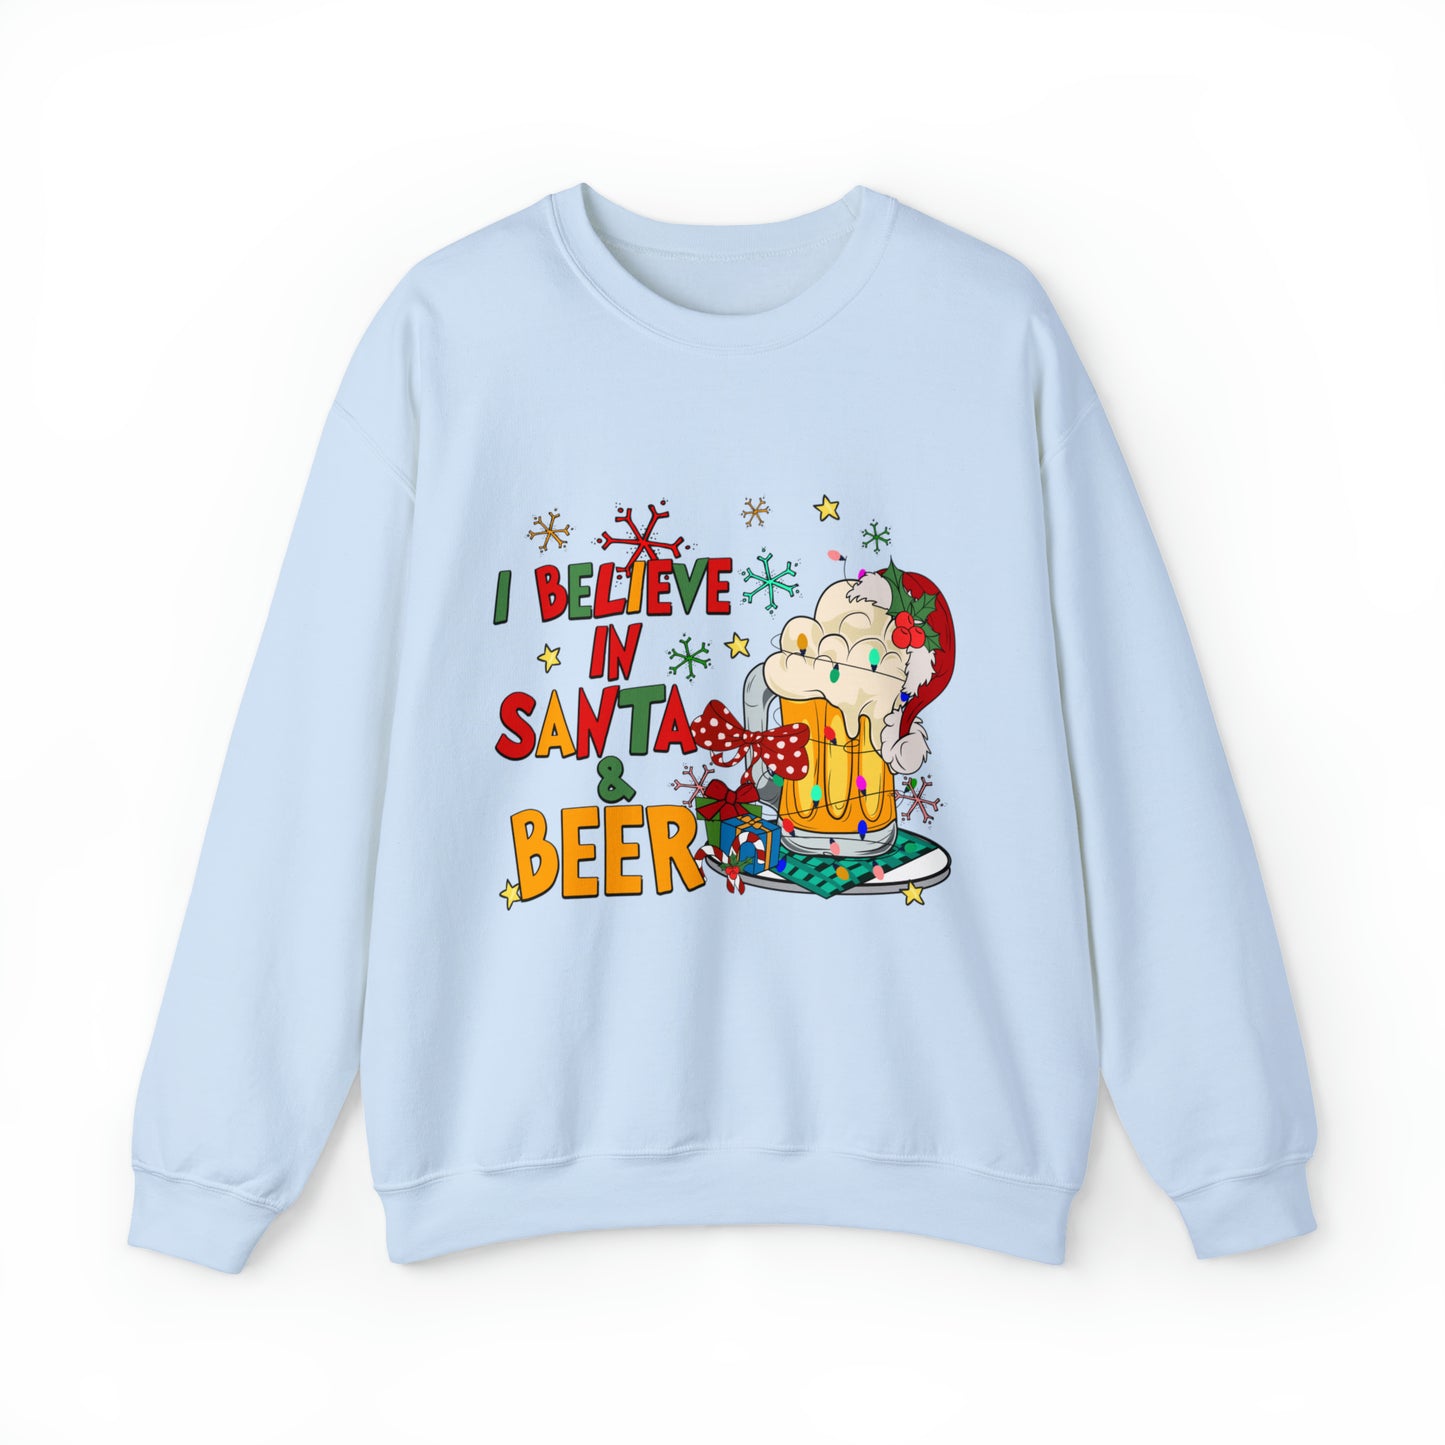 Santa and Beer Women's and Men's Unisex Christmas Sweatshirt